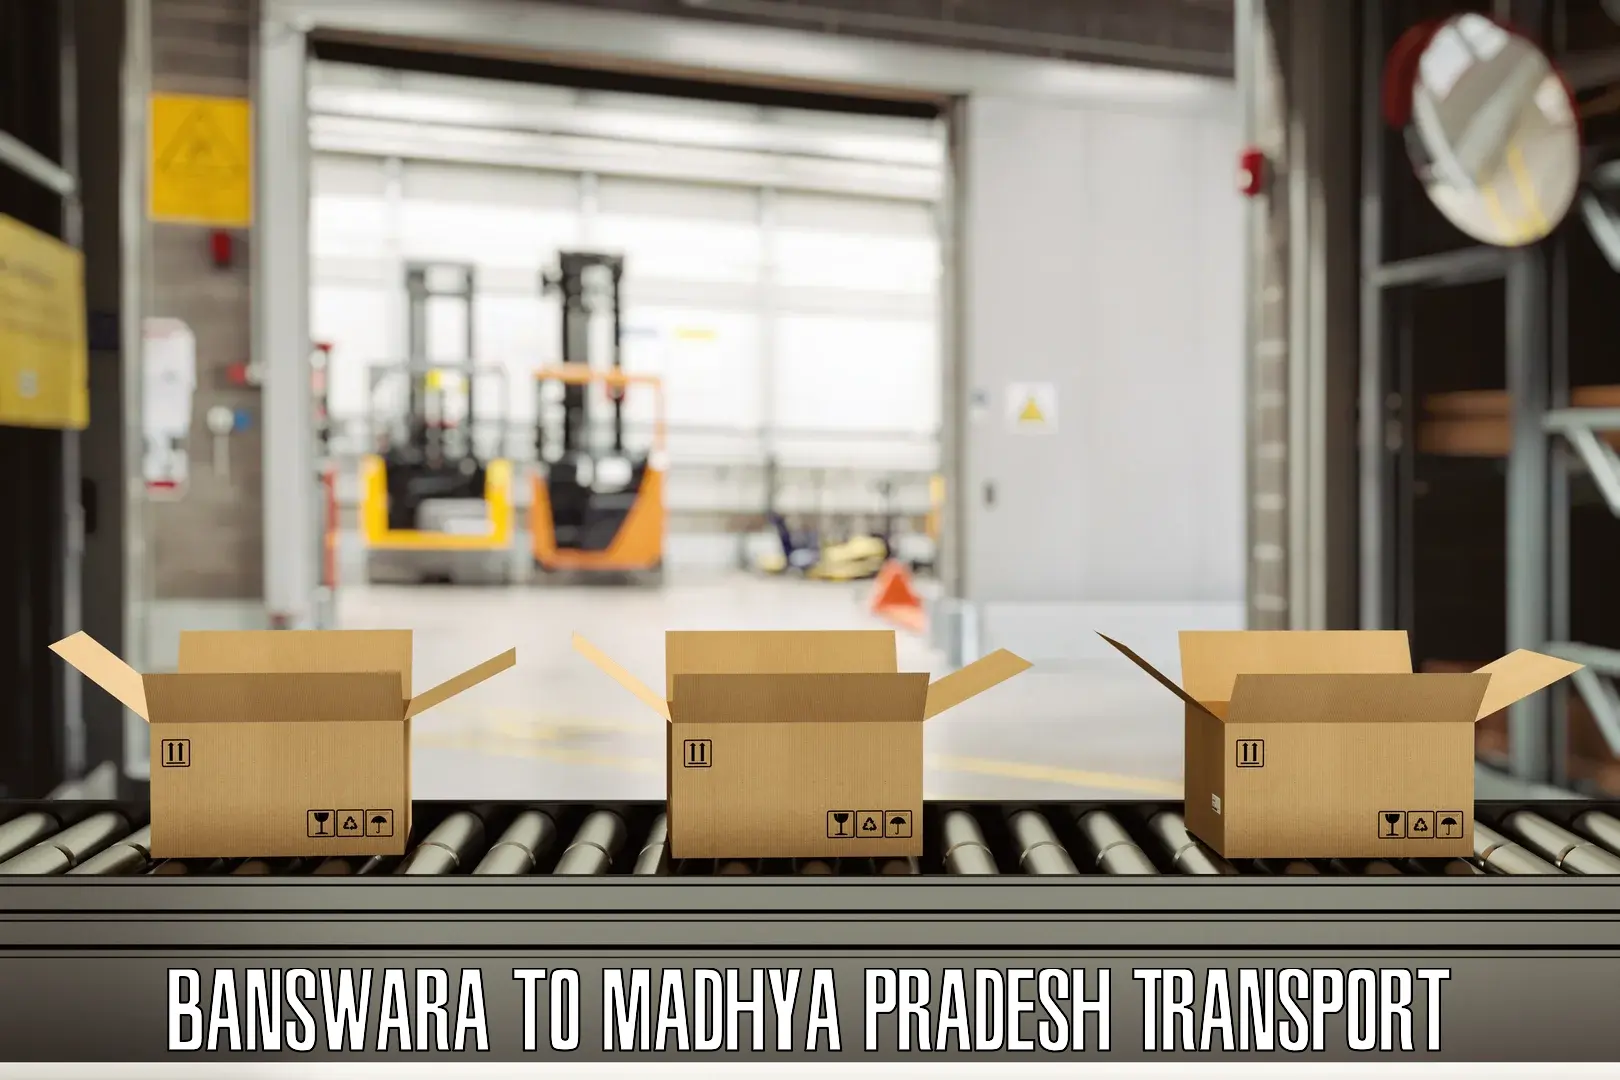 Daily parcel service transport Banswara to Sardarpur